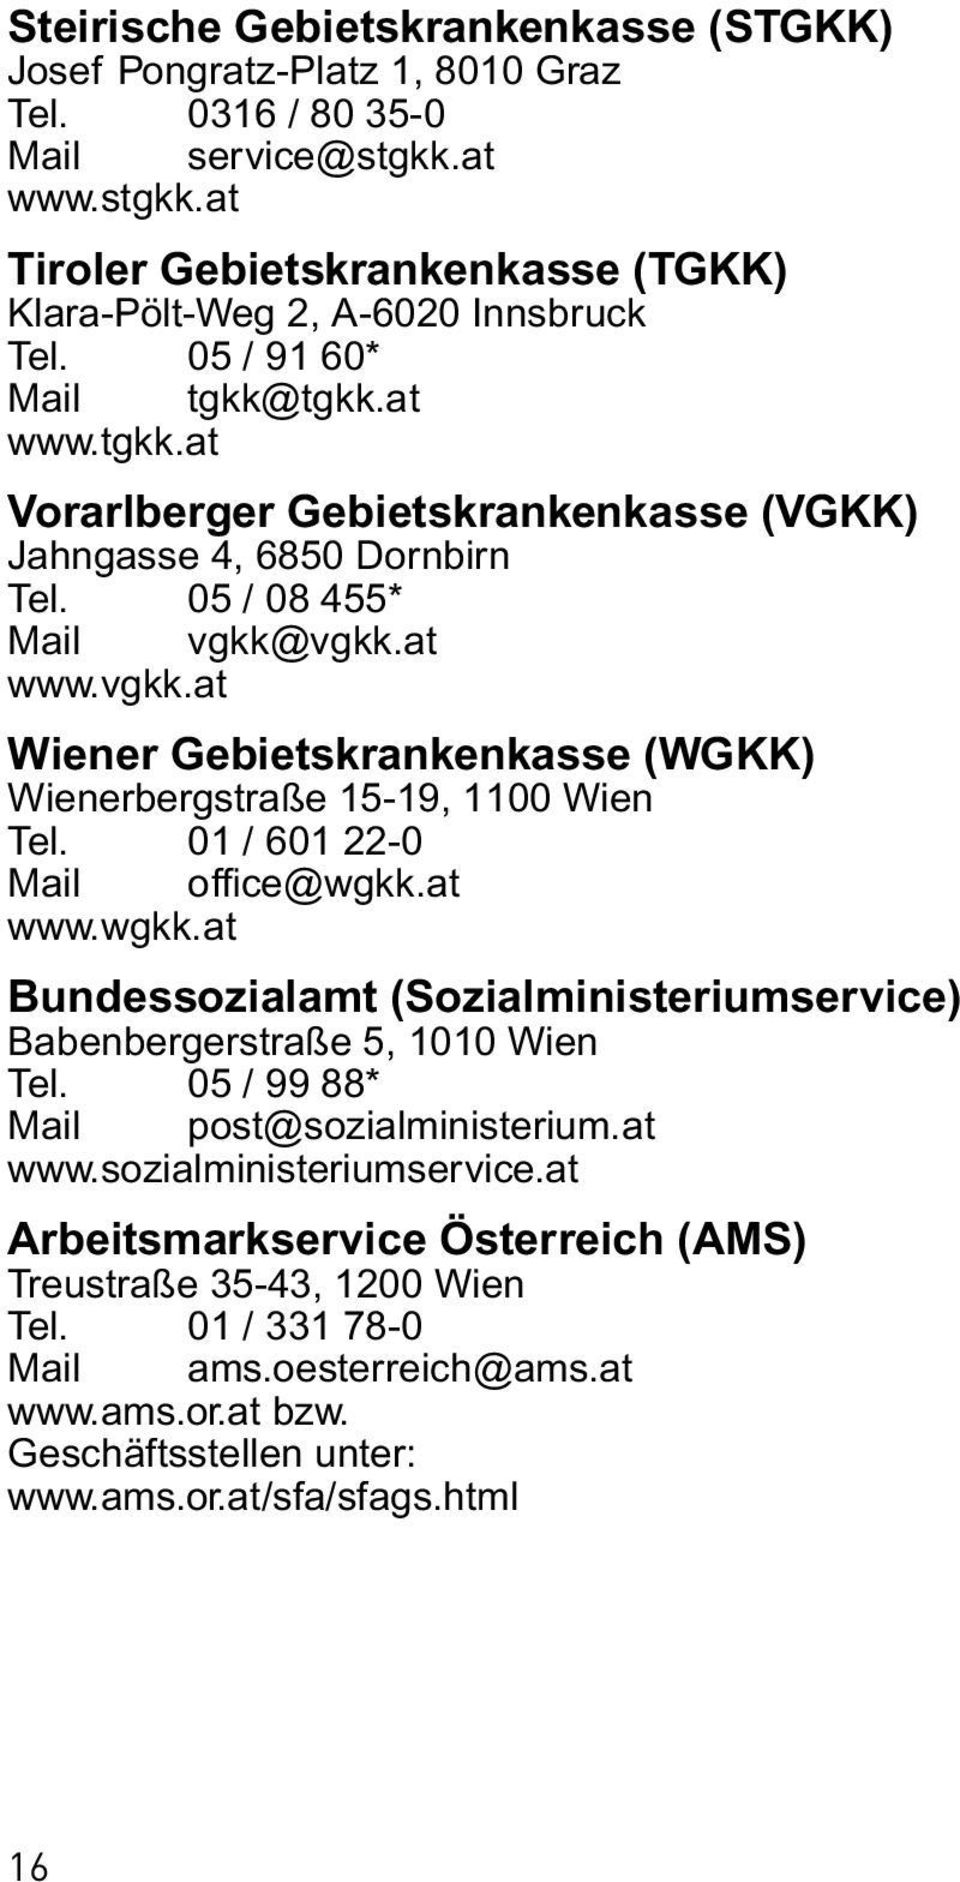 vgkk.at www.vgkk.at Wiener Gebietskrankenkasse (WGKK) Wienerbergstraße 15-19, 1100 Wien Tel. 01 / 601 22-0 Mail office@wgkk.